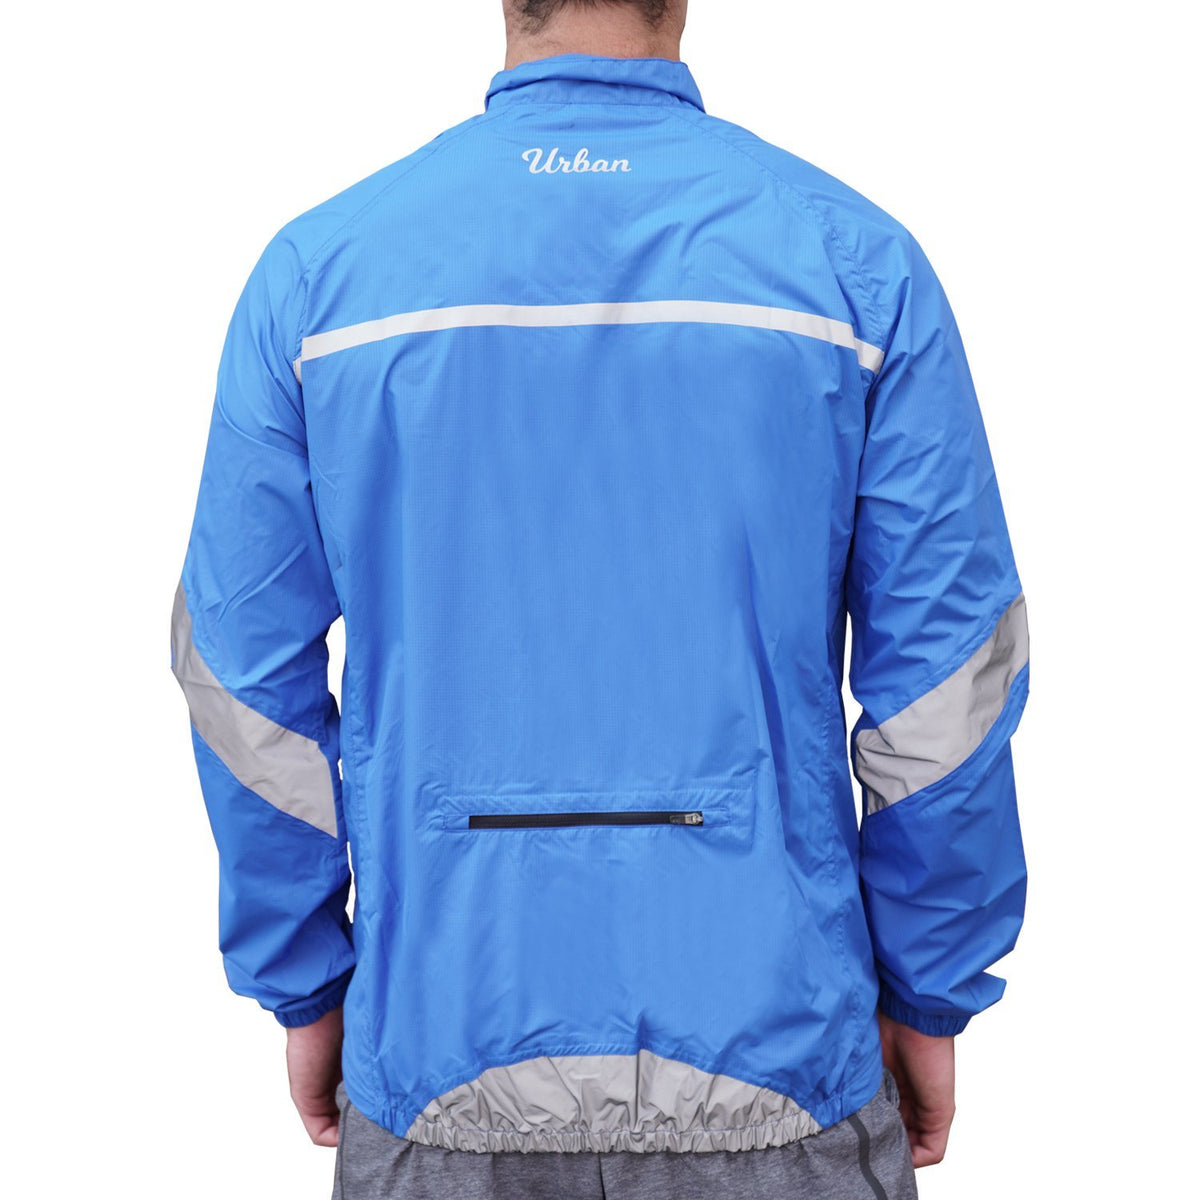 Urban Windproof & Waterproof Commuters Men's Cycling Jacket - Blue ...